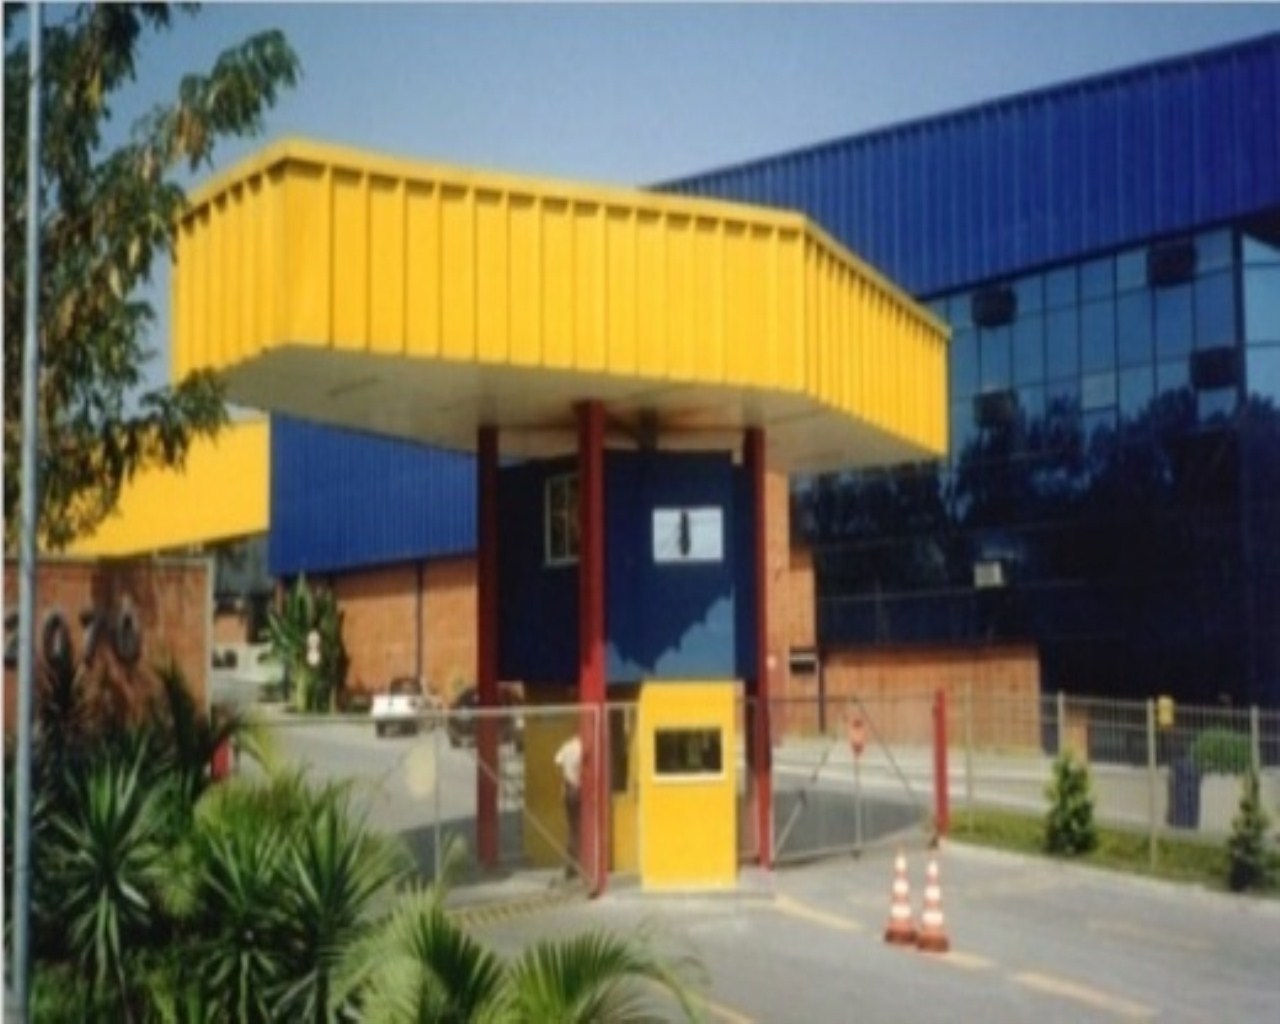 Industrial Para Aluguel — Avenida SN 1, 280 - Parque Duque; Duque de Caxias  - RJ Duque de Caxias - RJ,, Brazil